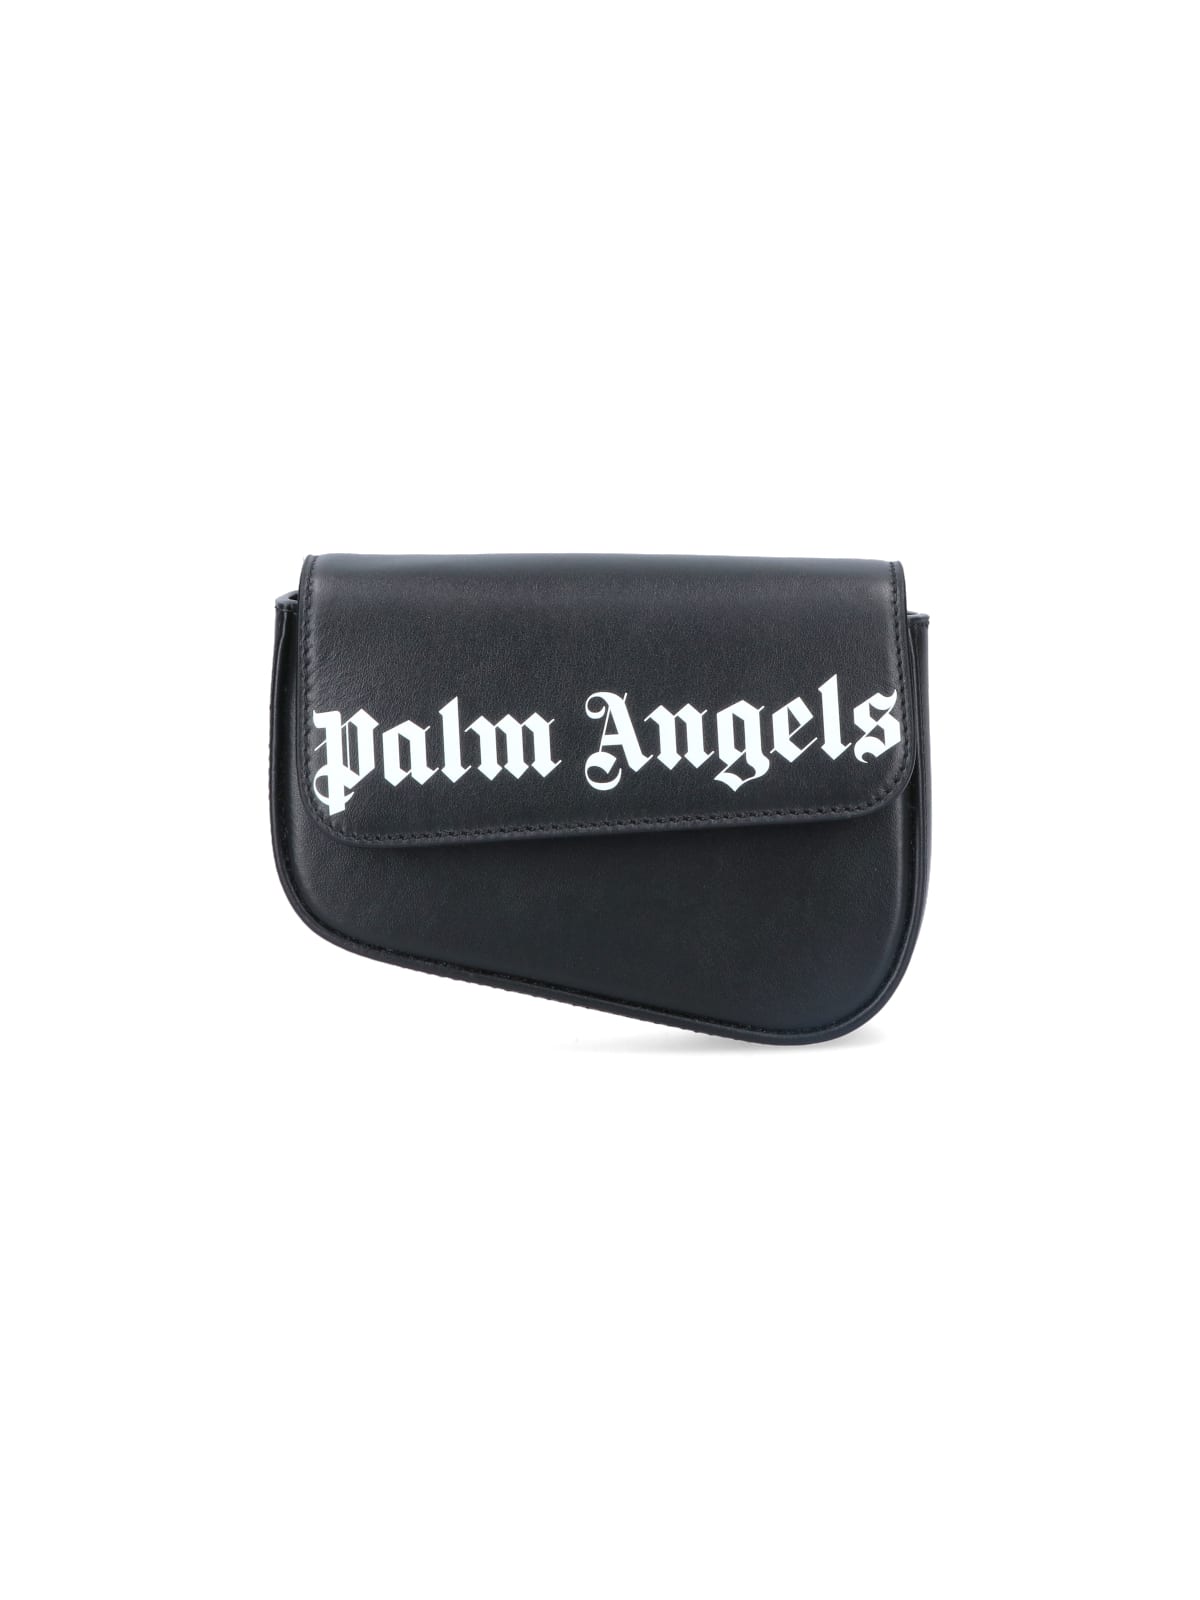 Palm Angels Beads Strap Crash Shoulder Bag